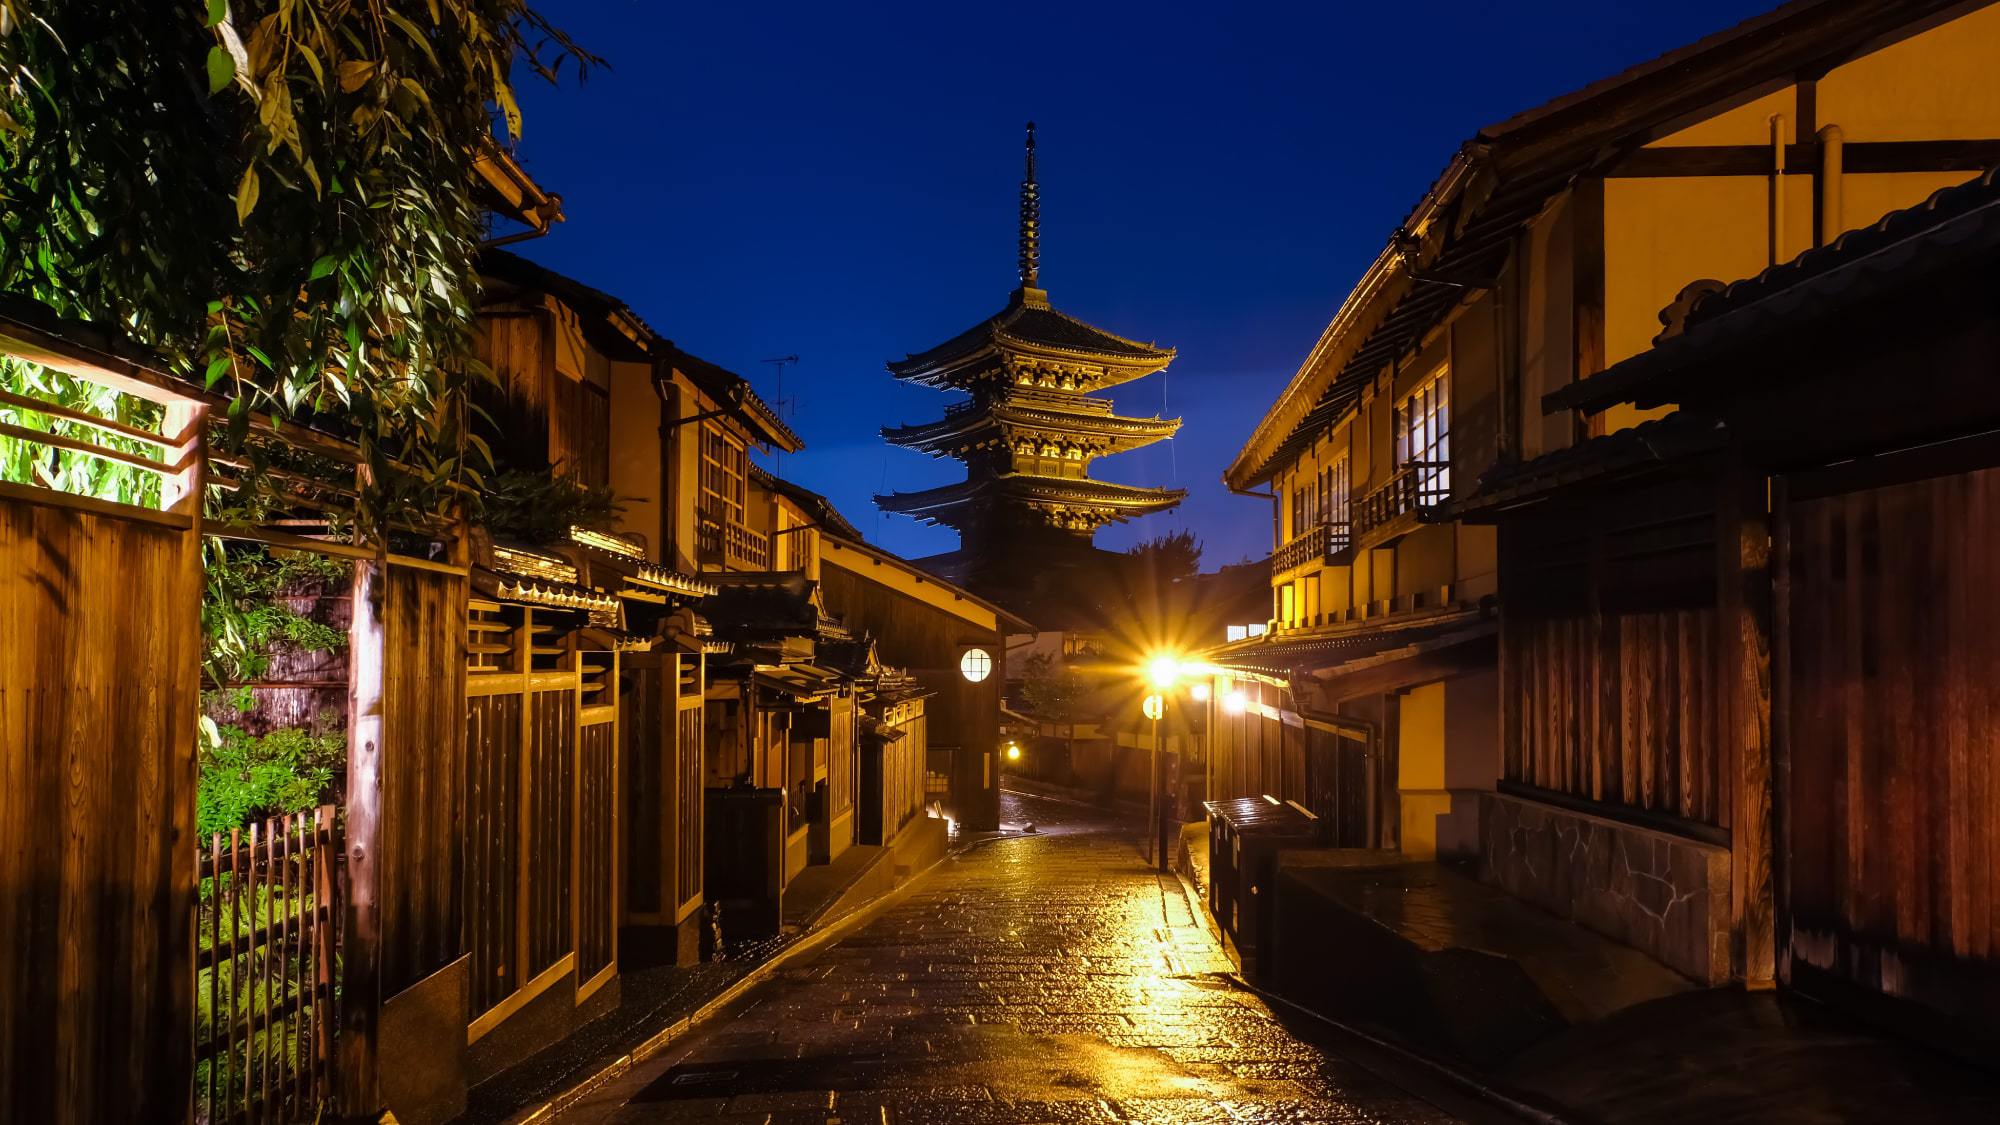 【法観寺】八坂神社と清水寺の中間に位置しており、「八坂の塔」という呼称で有名な観光スポット